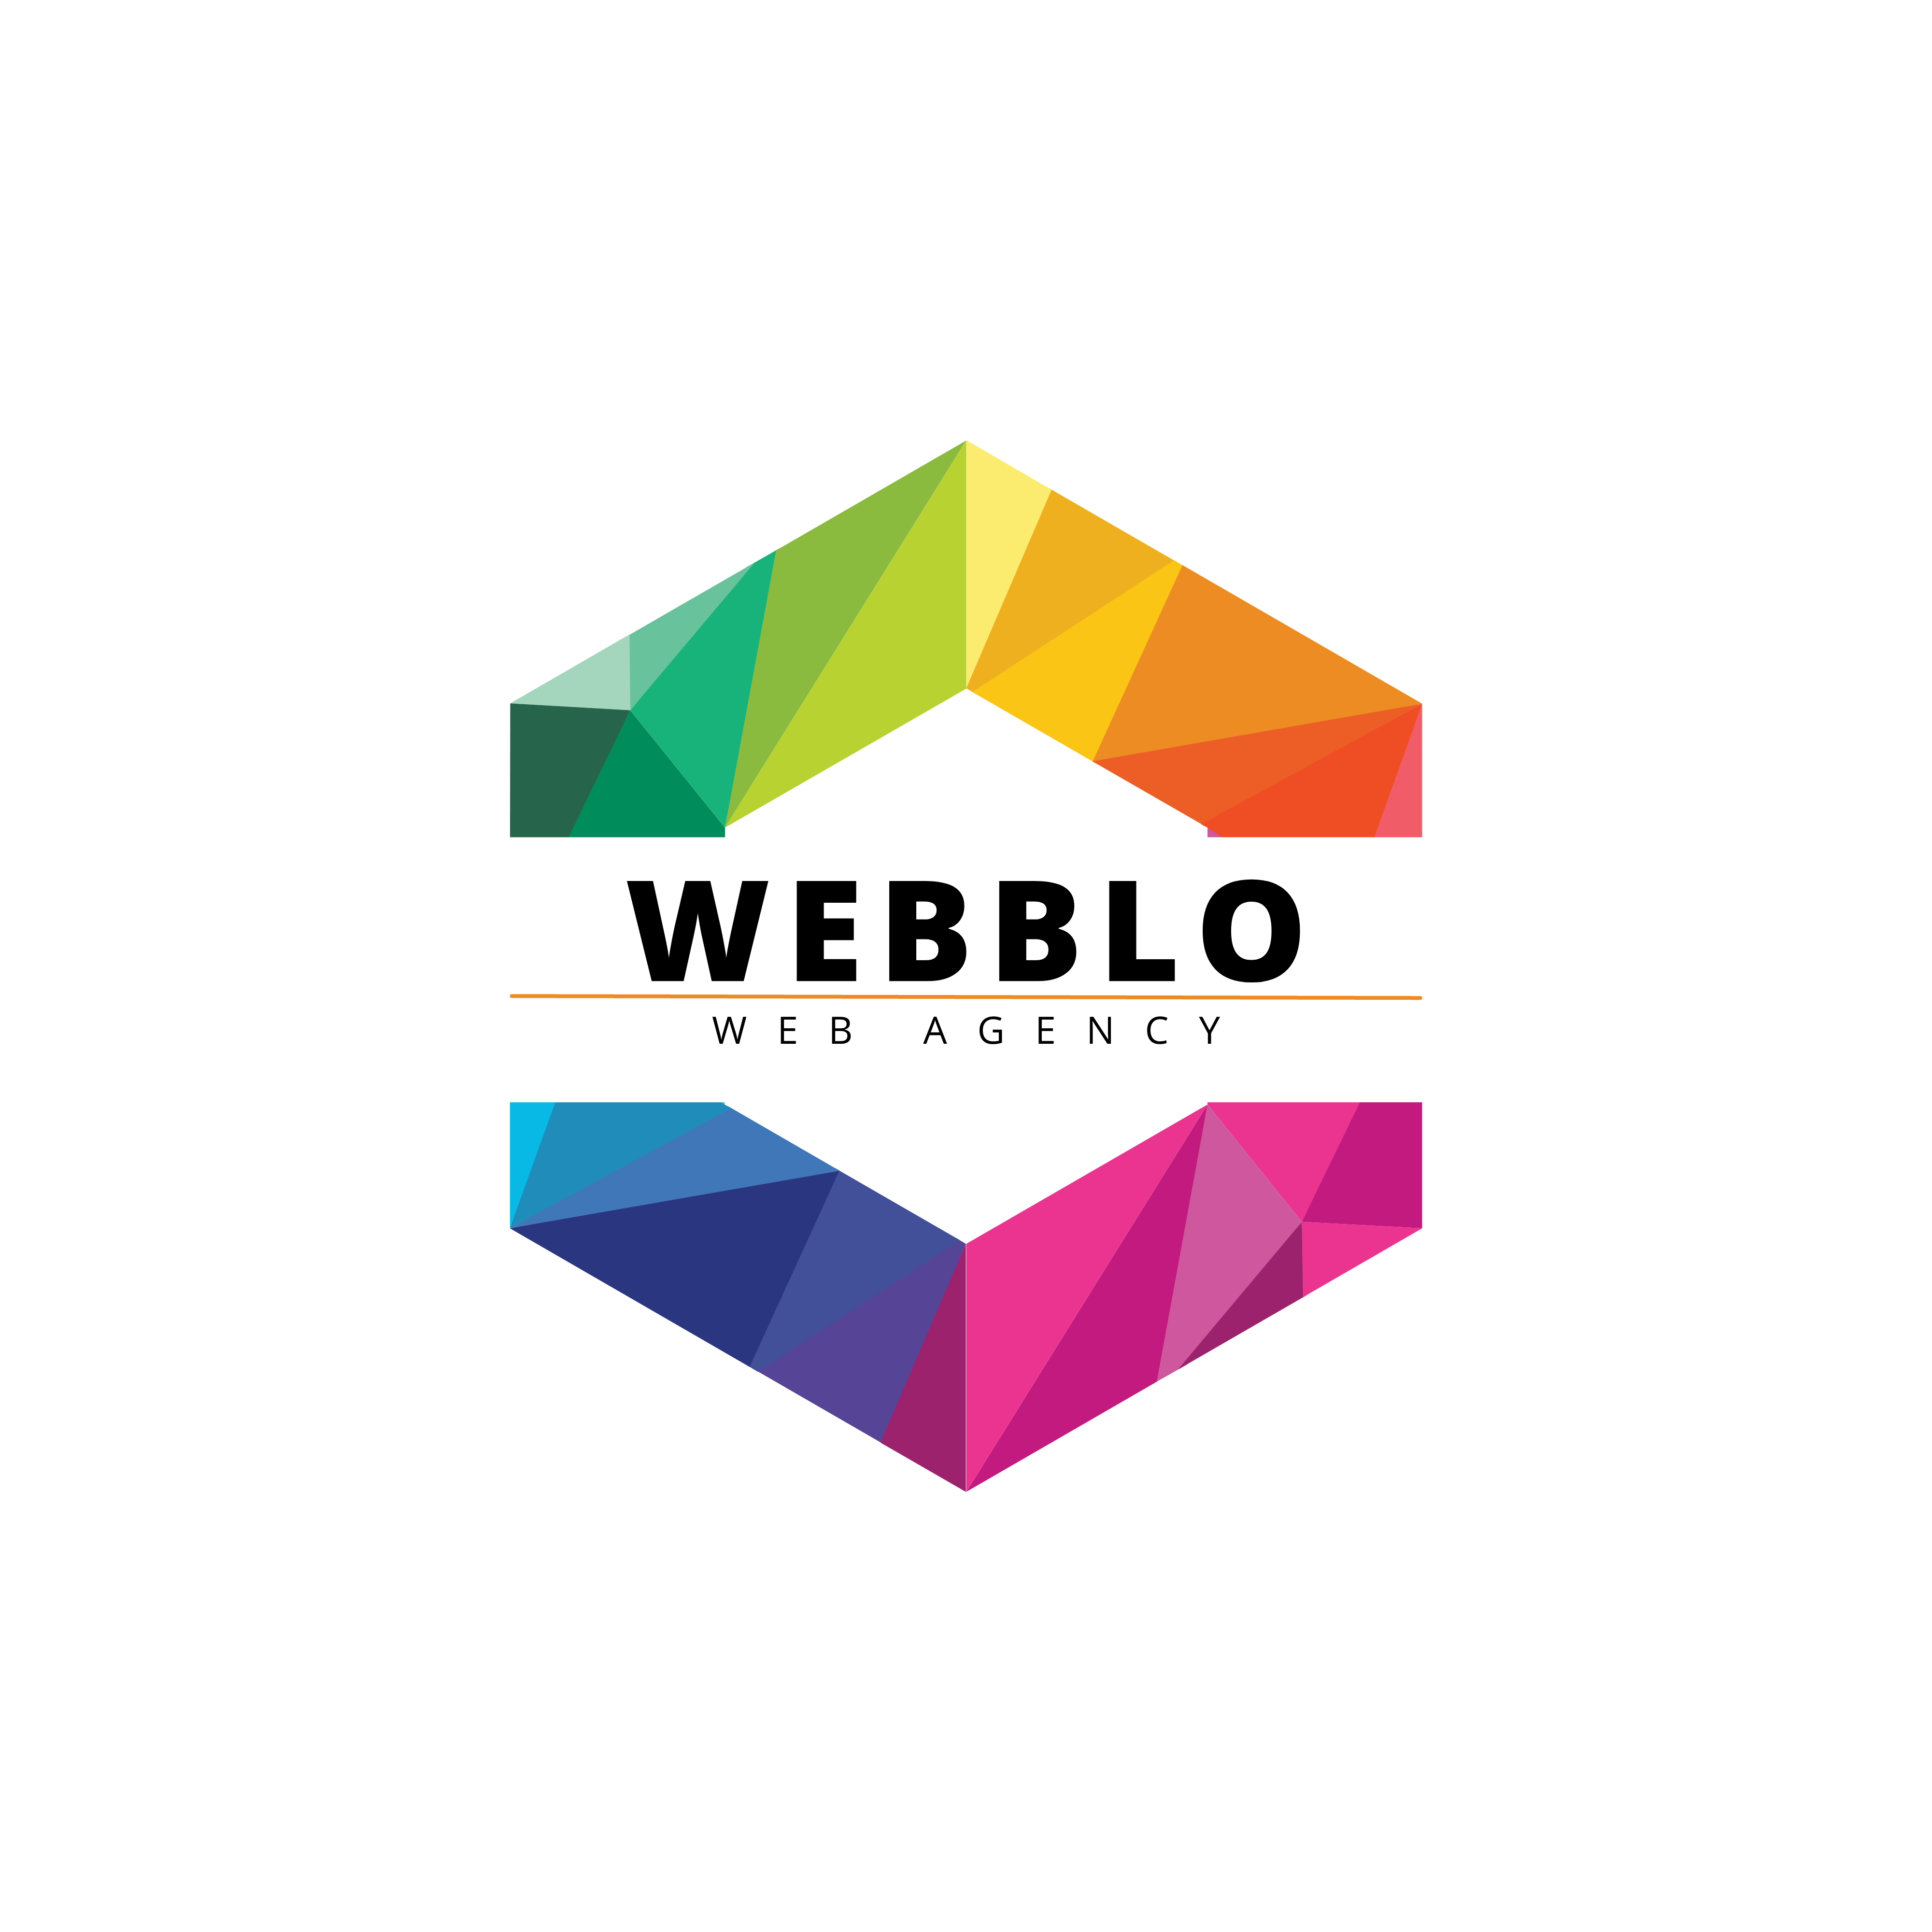 Webblo - Web Agency